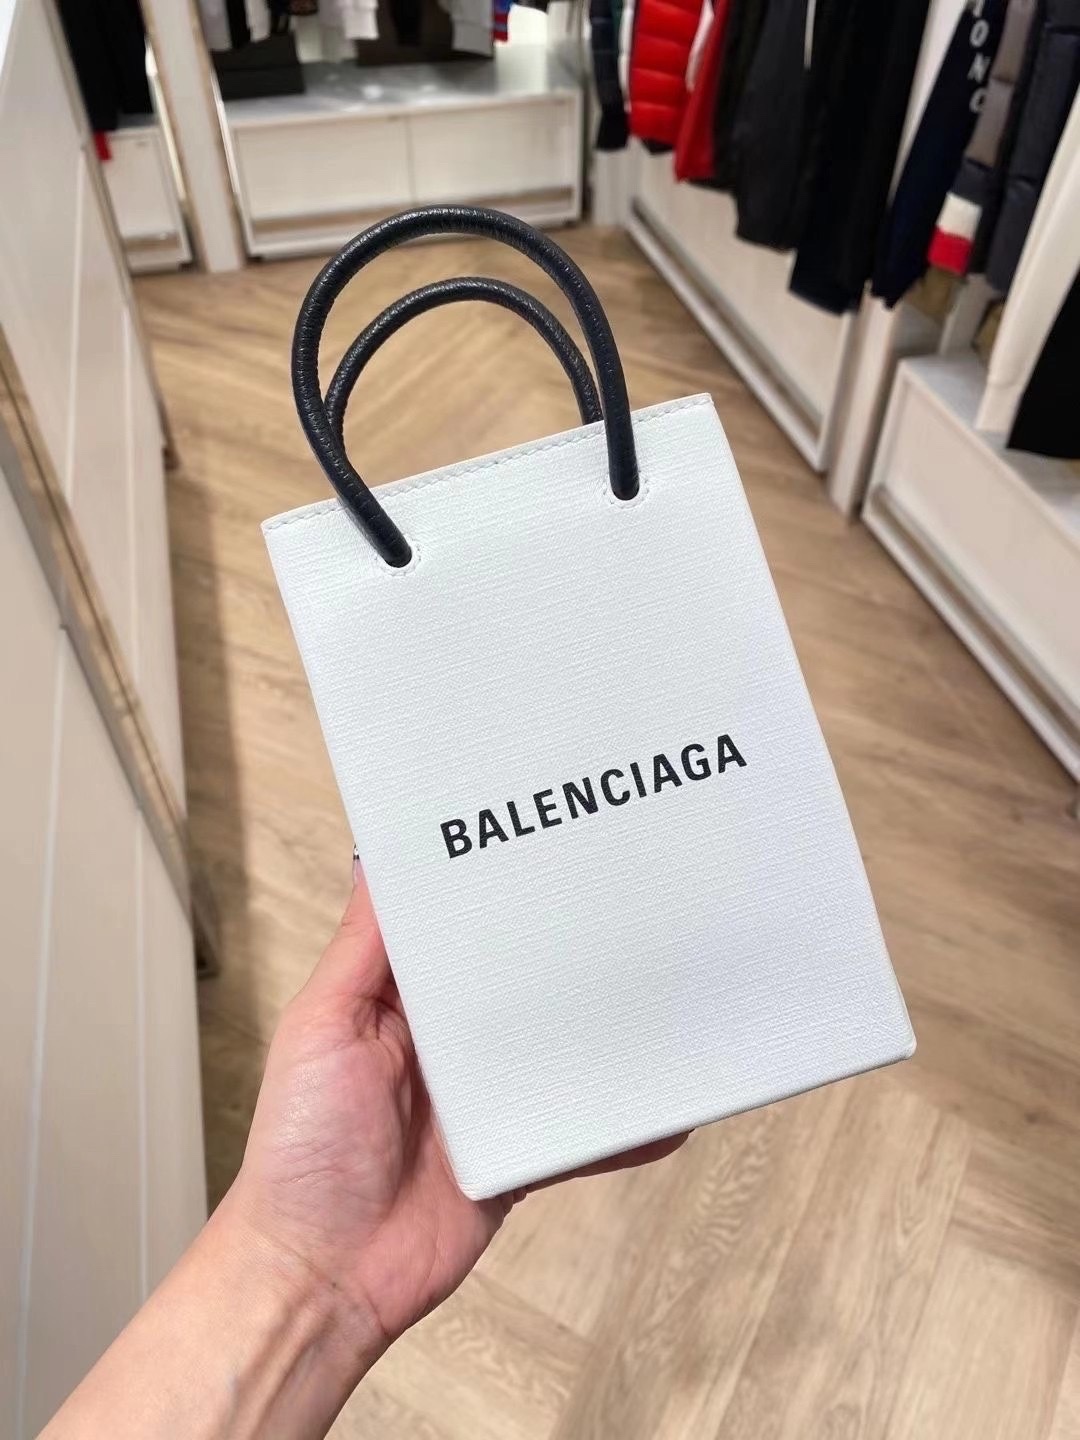 Balenciaga Shopping 12CM Bag 十字纹白色购物纸袋包 593826